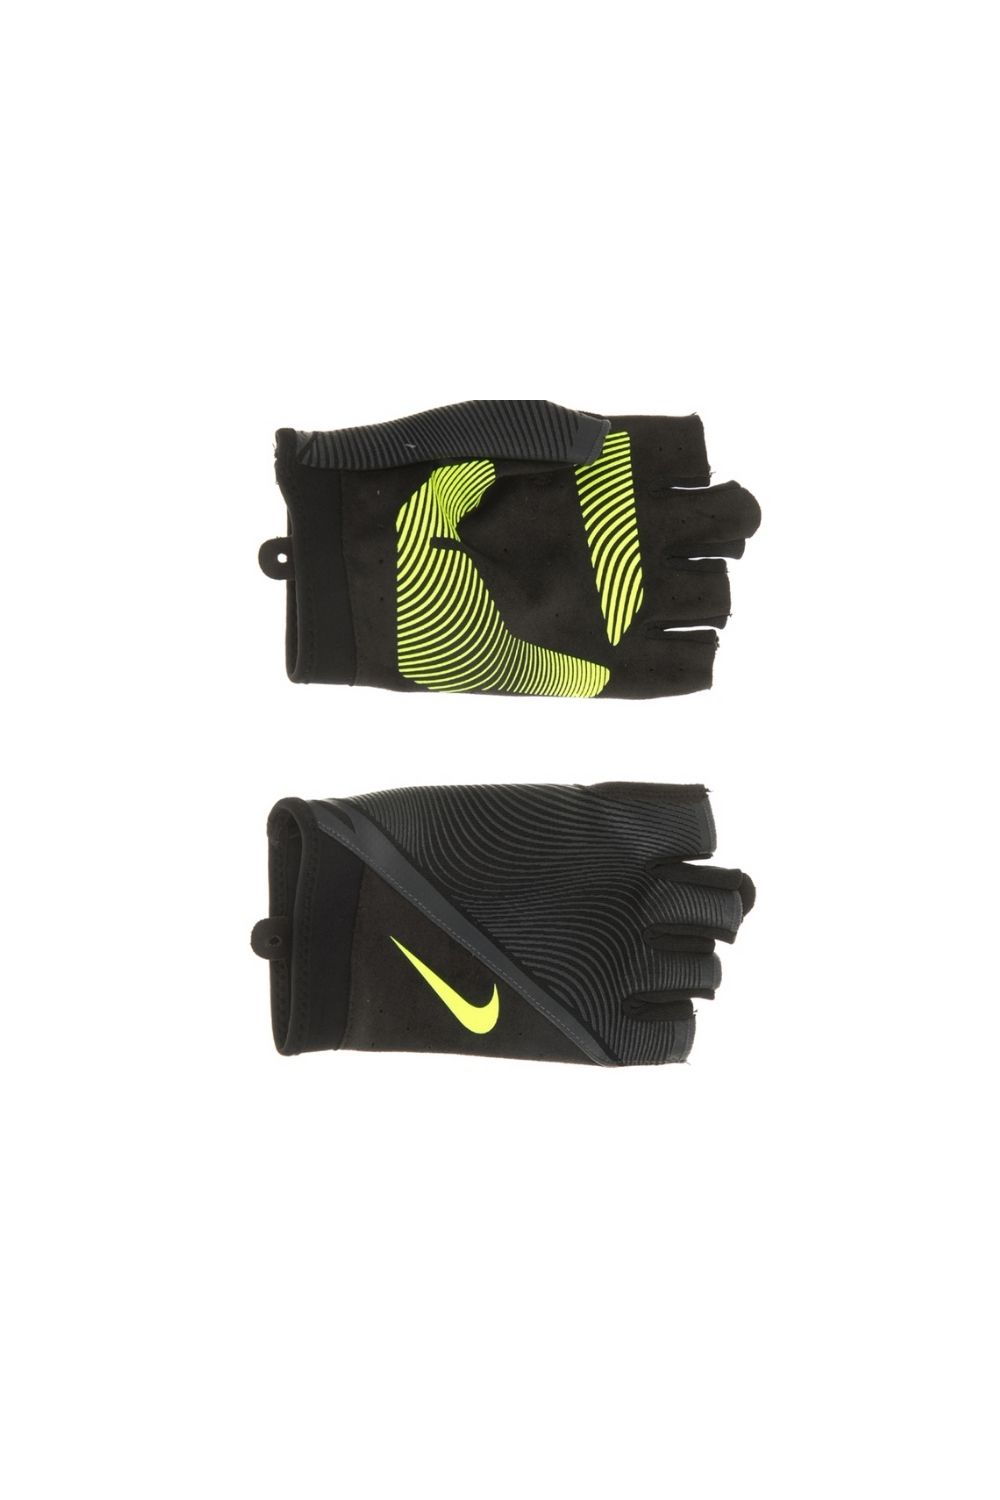 NIKE - Ανδρικά γάντια NIKE MEN'S HAVOC TRAINING μαύρα Ανδρικά/Αξεσουάρ/Αθλητικά Είδη/Εξοπλισμός